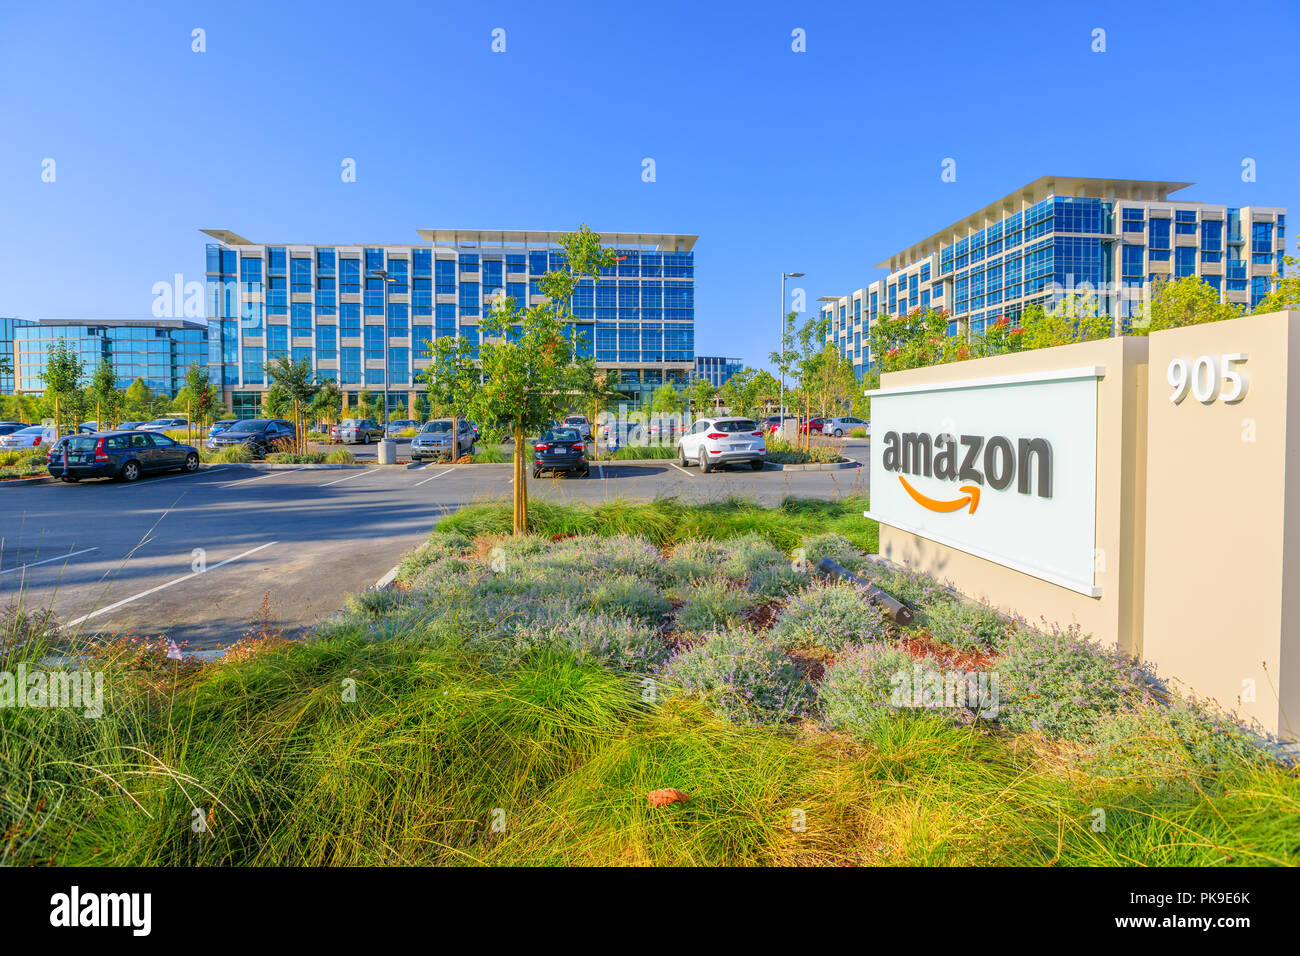 Sunnyvale, California, Stati Uniti d'America - 13 agosto 2018: uffici di Amazon azienda americana. Amazon è leader nel settore del commercio elettronico e del cloud computing, rivenditore internet e libreria online e video venditore. Foto Stock